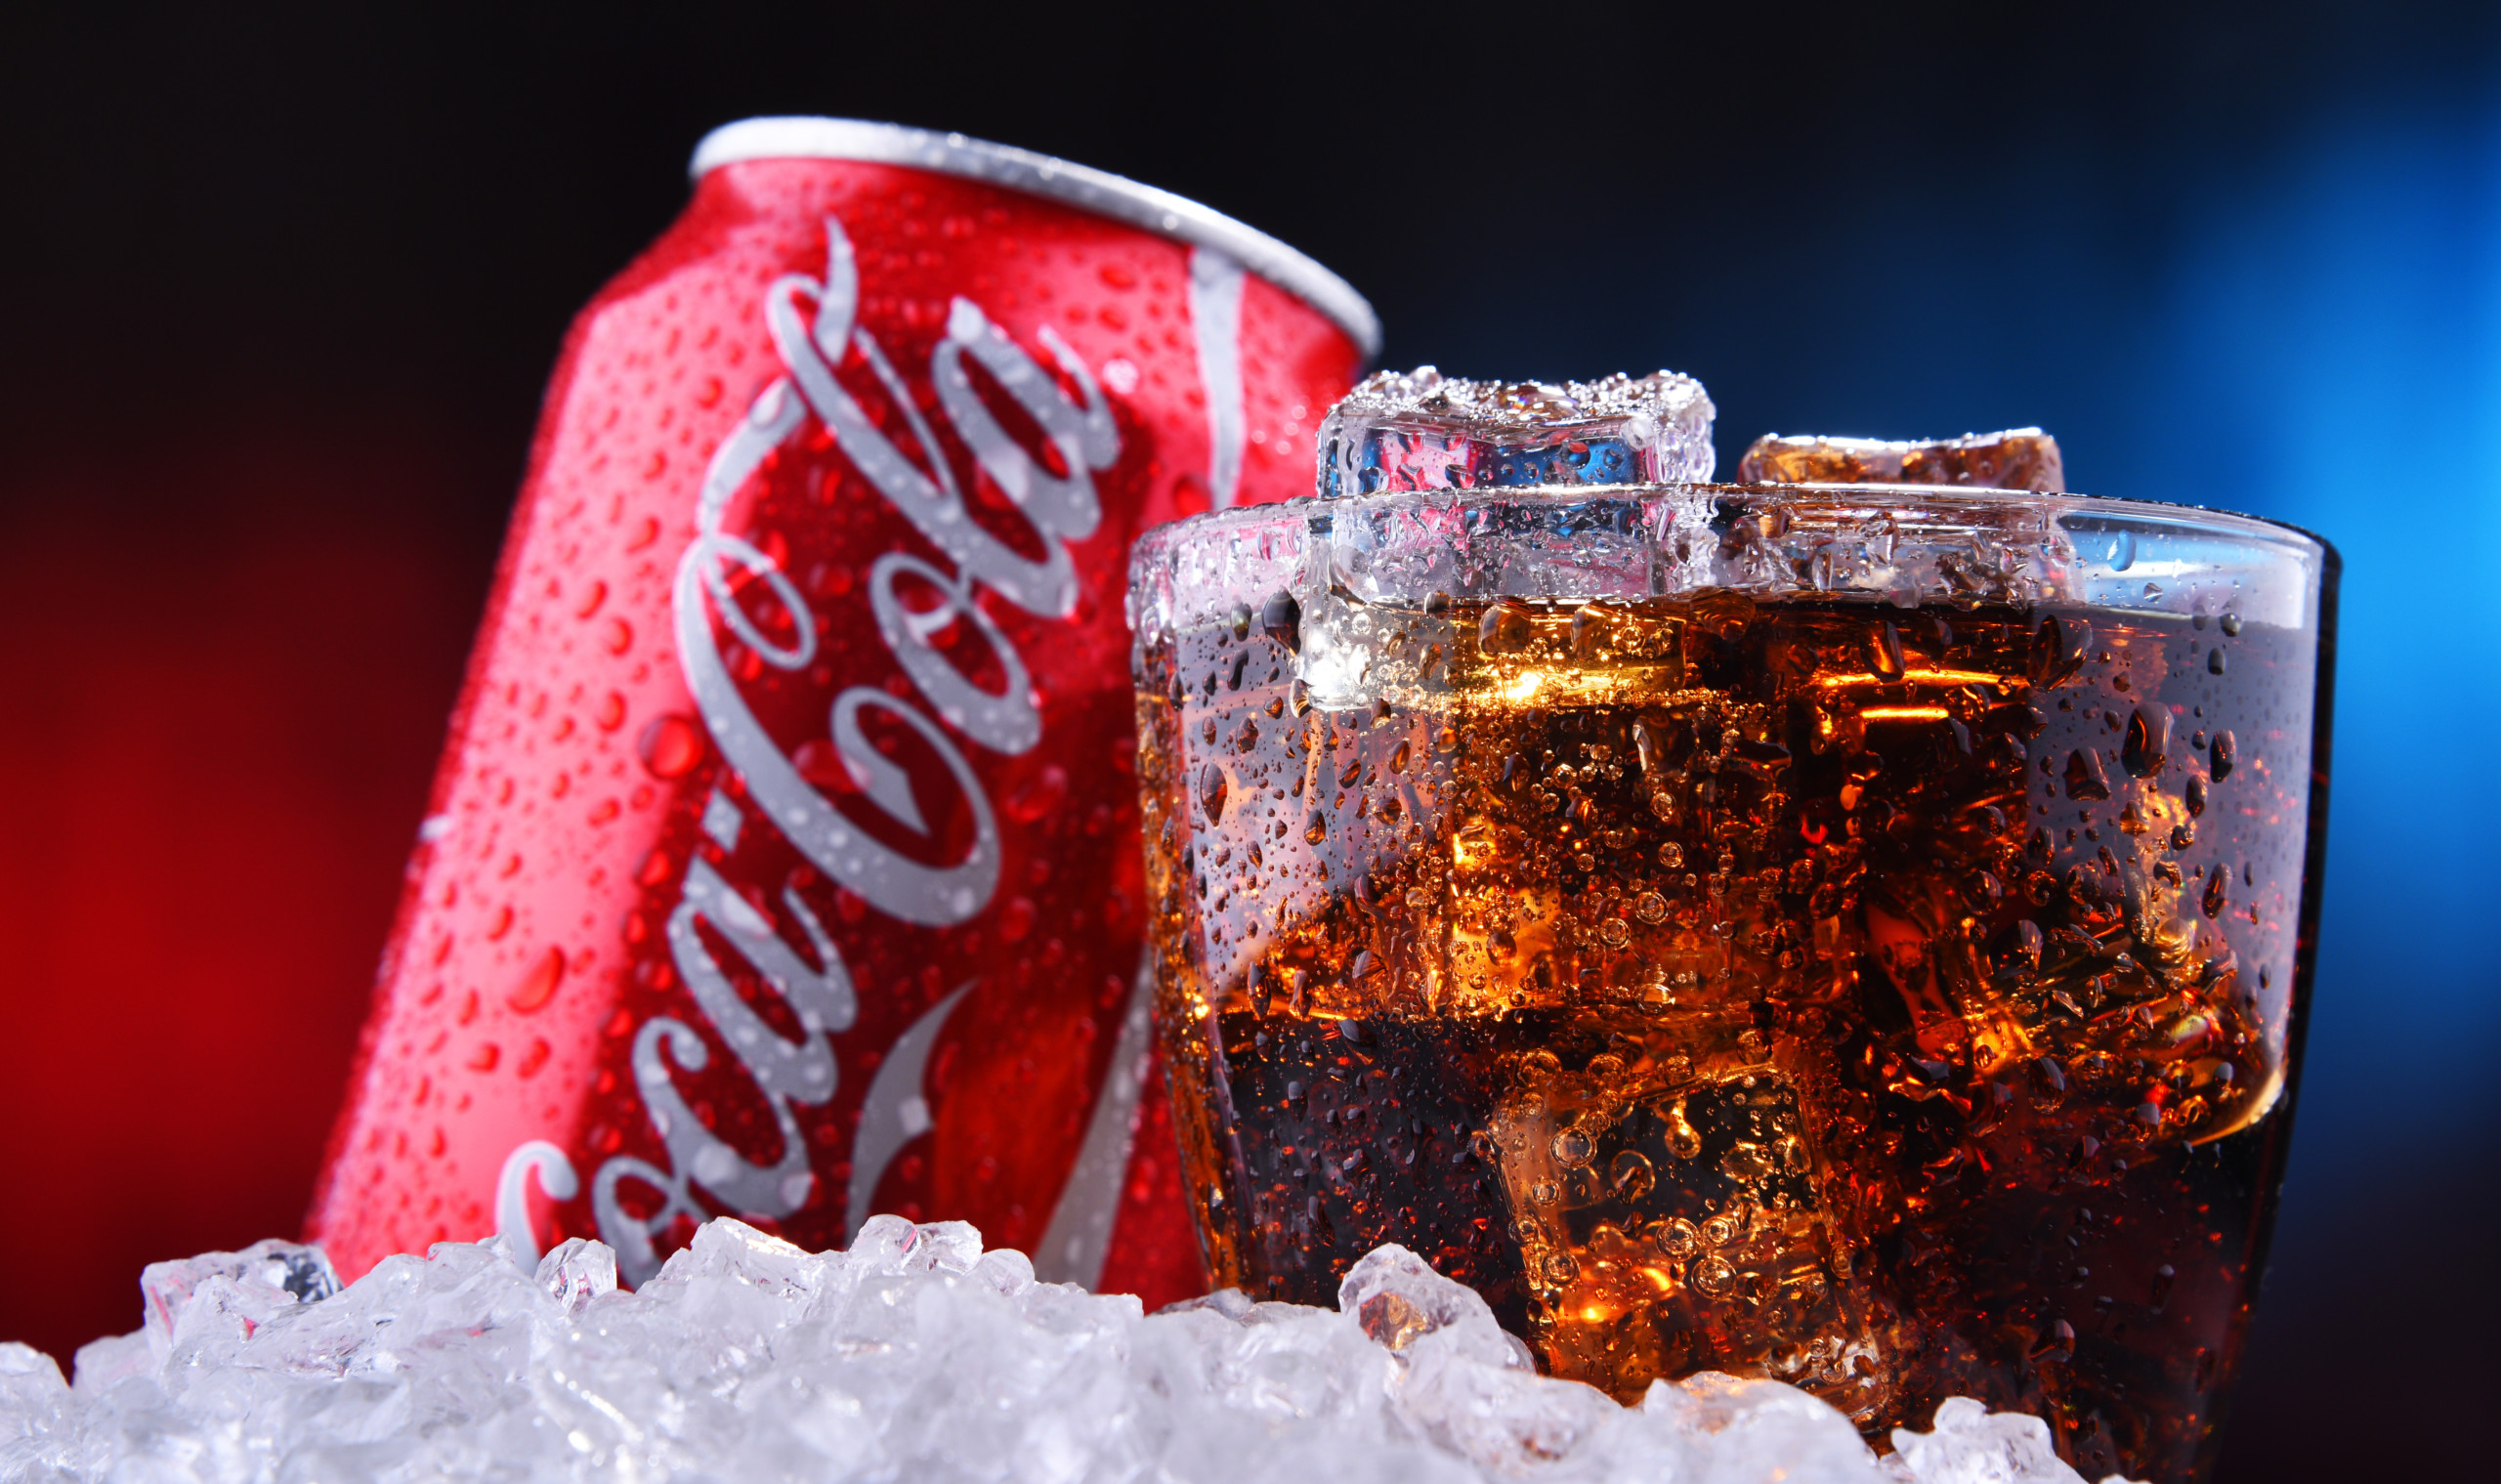 Musterdepot weiter auf Allzeithoch - Bei Coca-Cola fassen wir einen Einstieg im Musterdepot ins Auge!